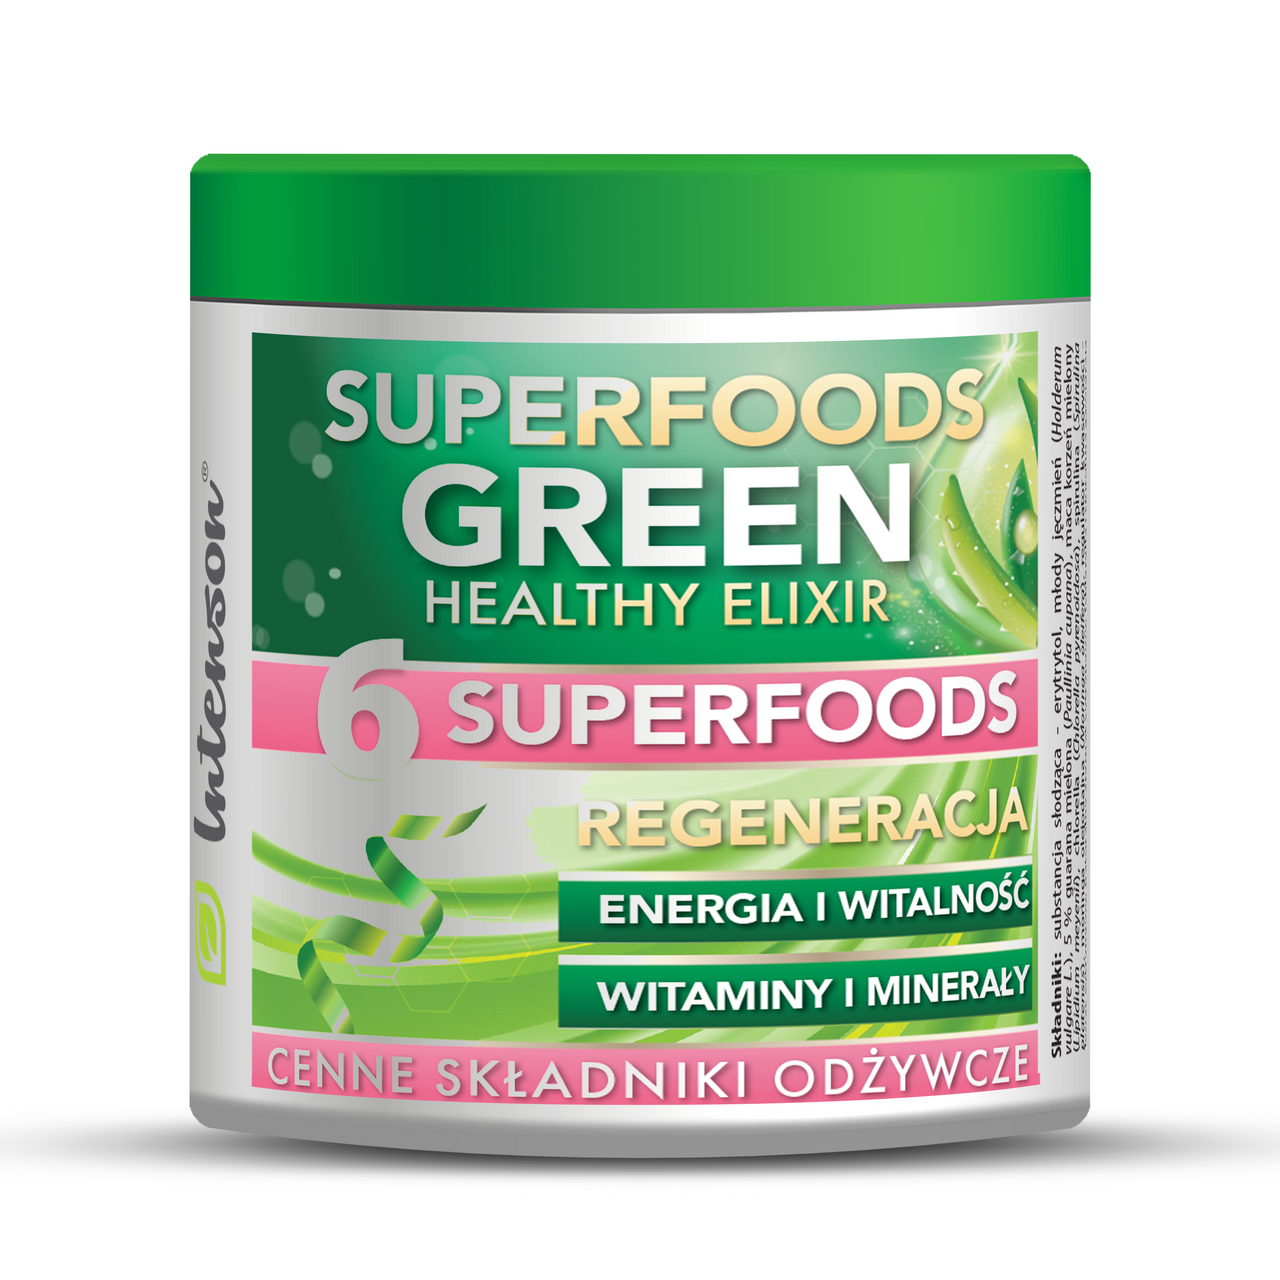 Green Superfood Elixir 150g